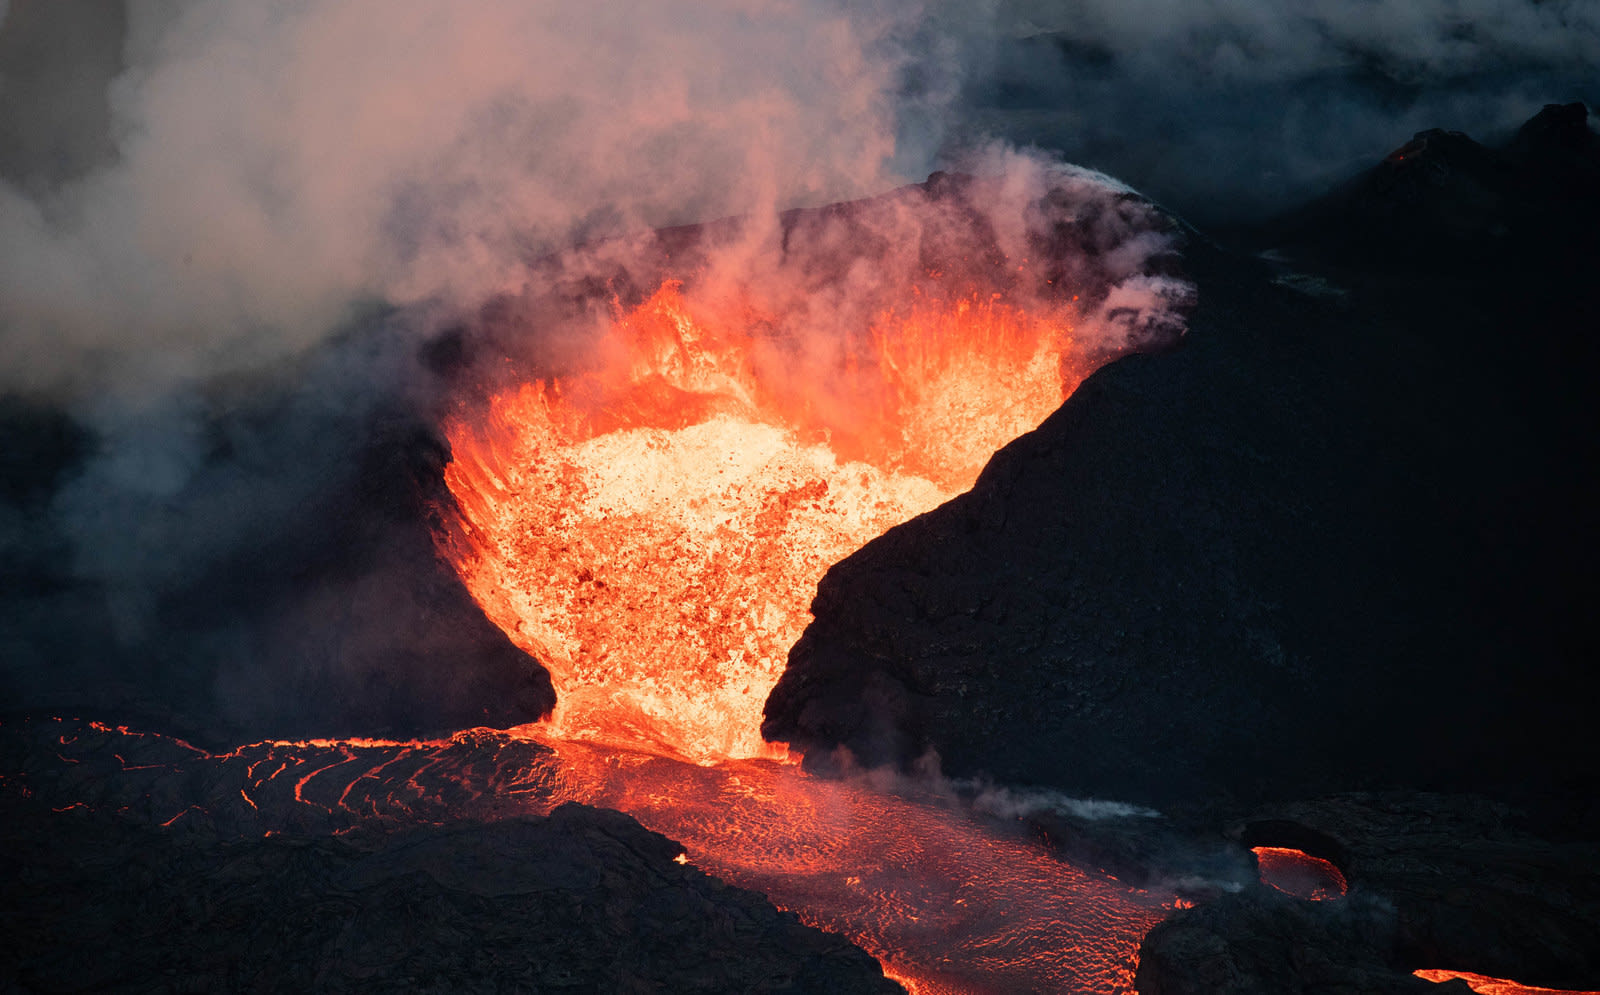 夏威夷毛伊岛火山图片